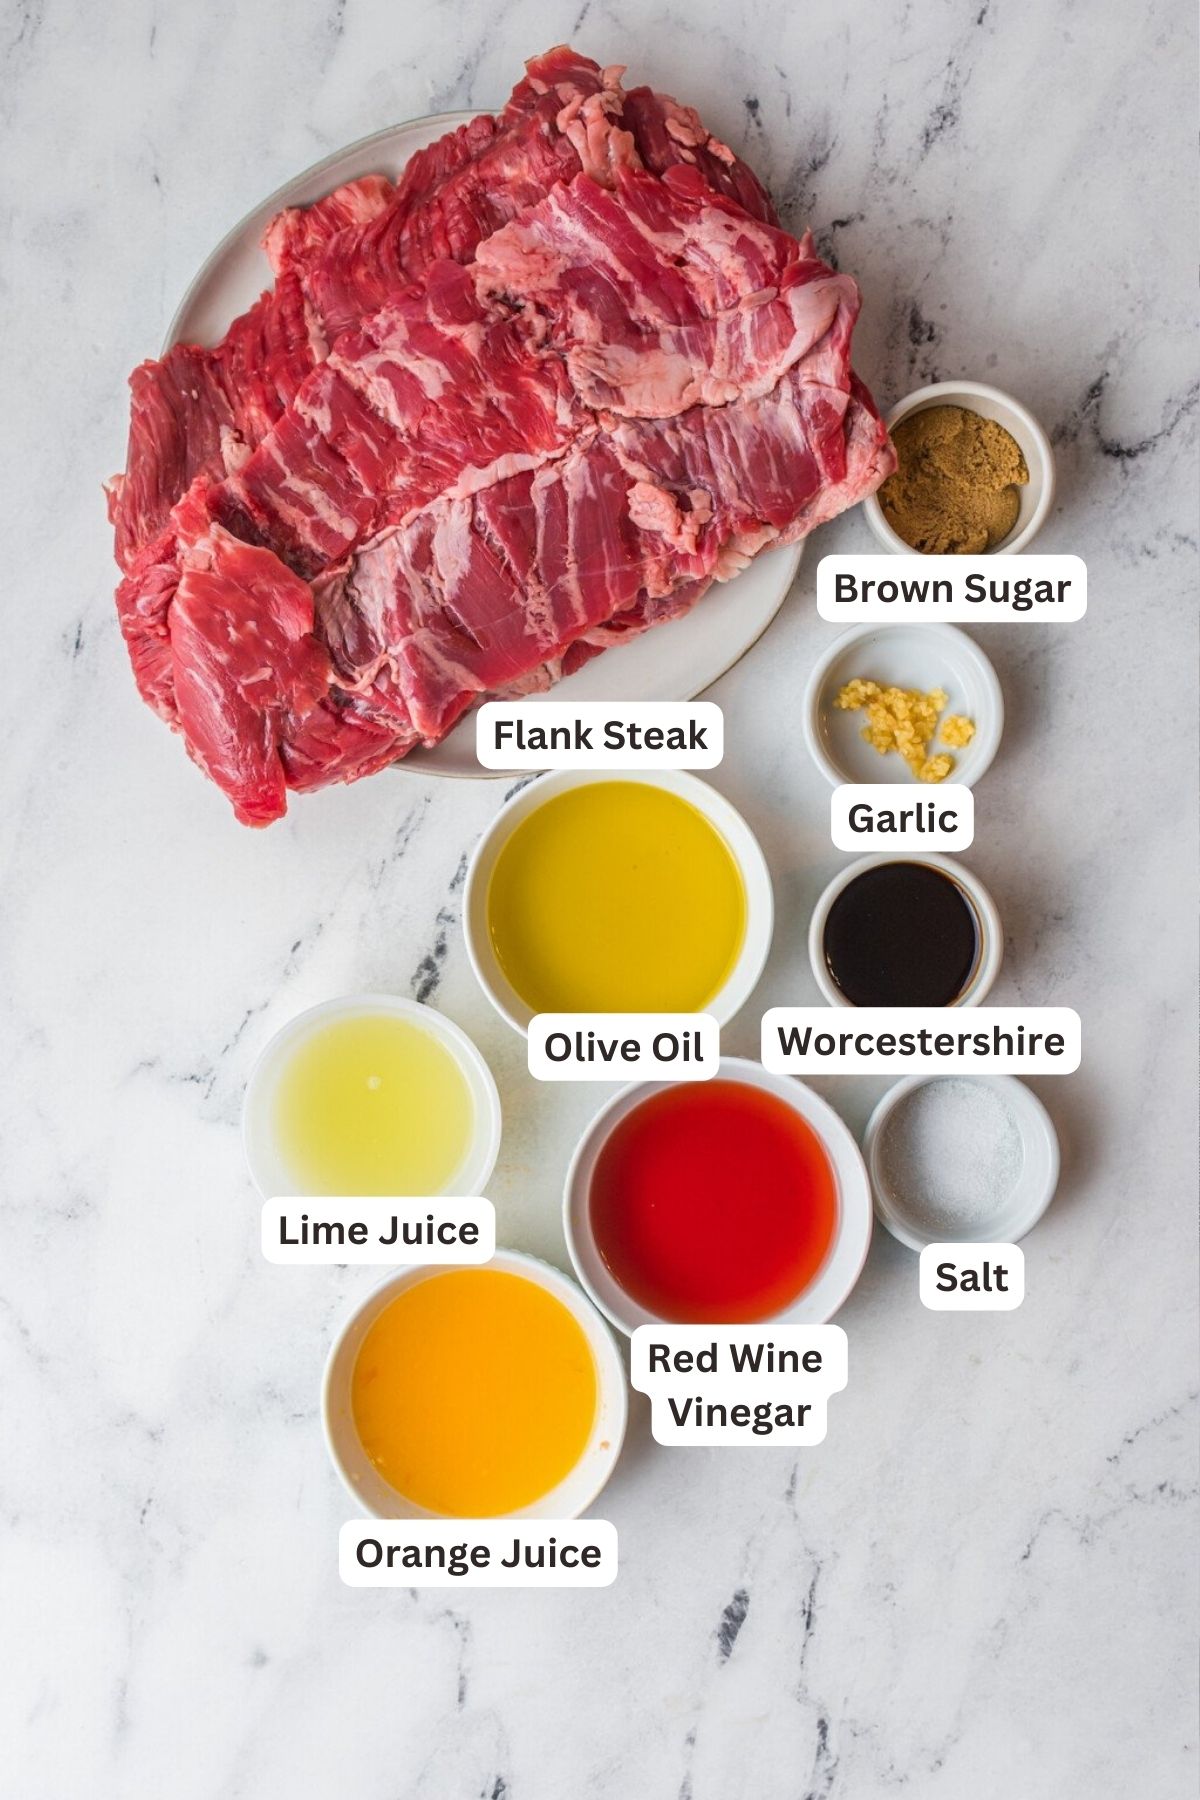 Ingredients for Juicy Flank Steak.